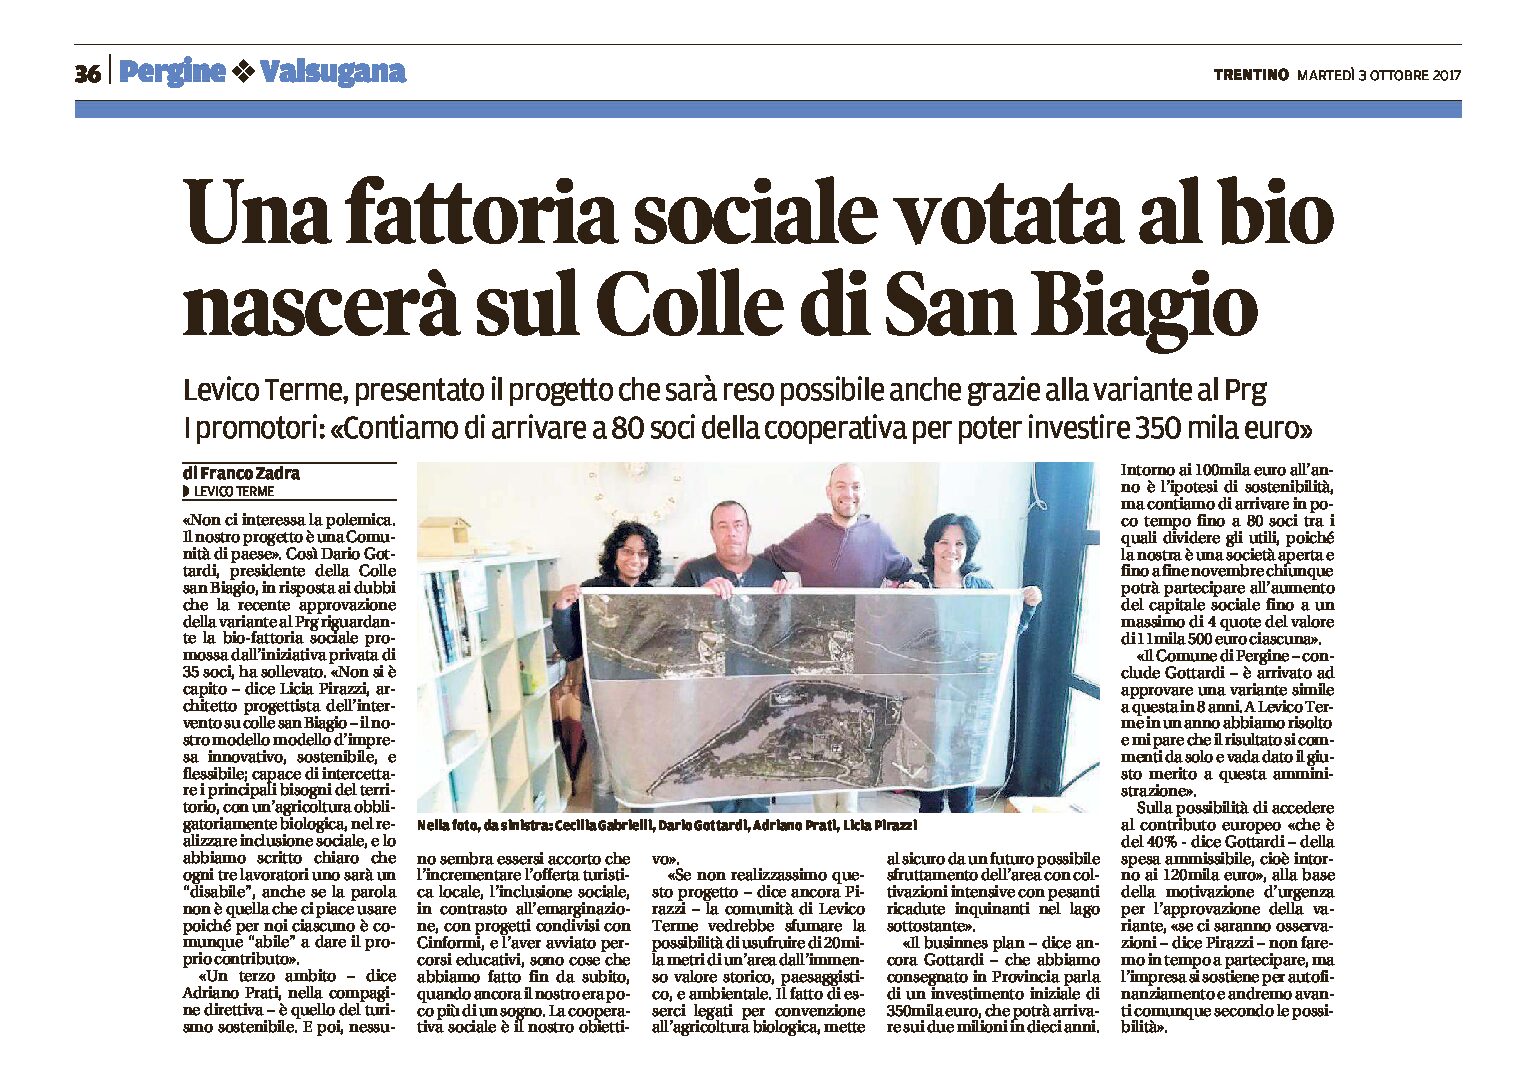 Levico, San Biagio: sul colle nascerà una fattoria sociale votata al bio